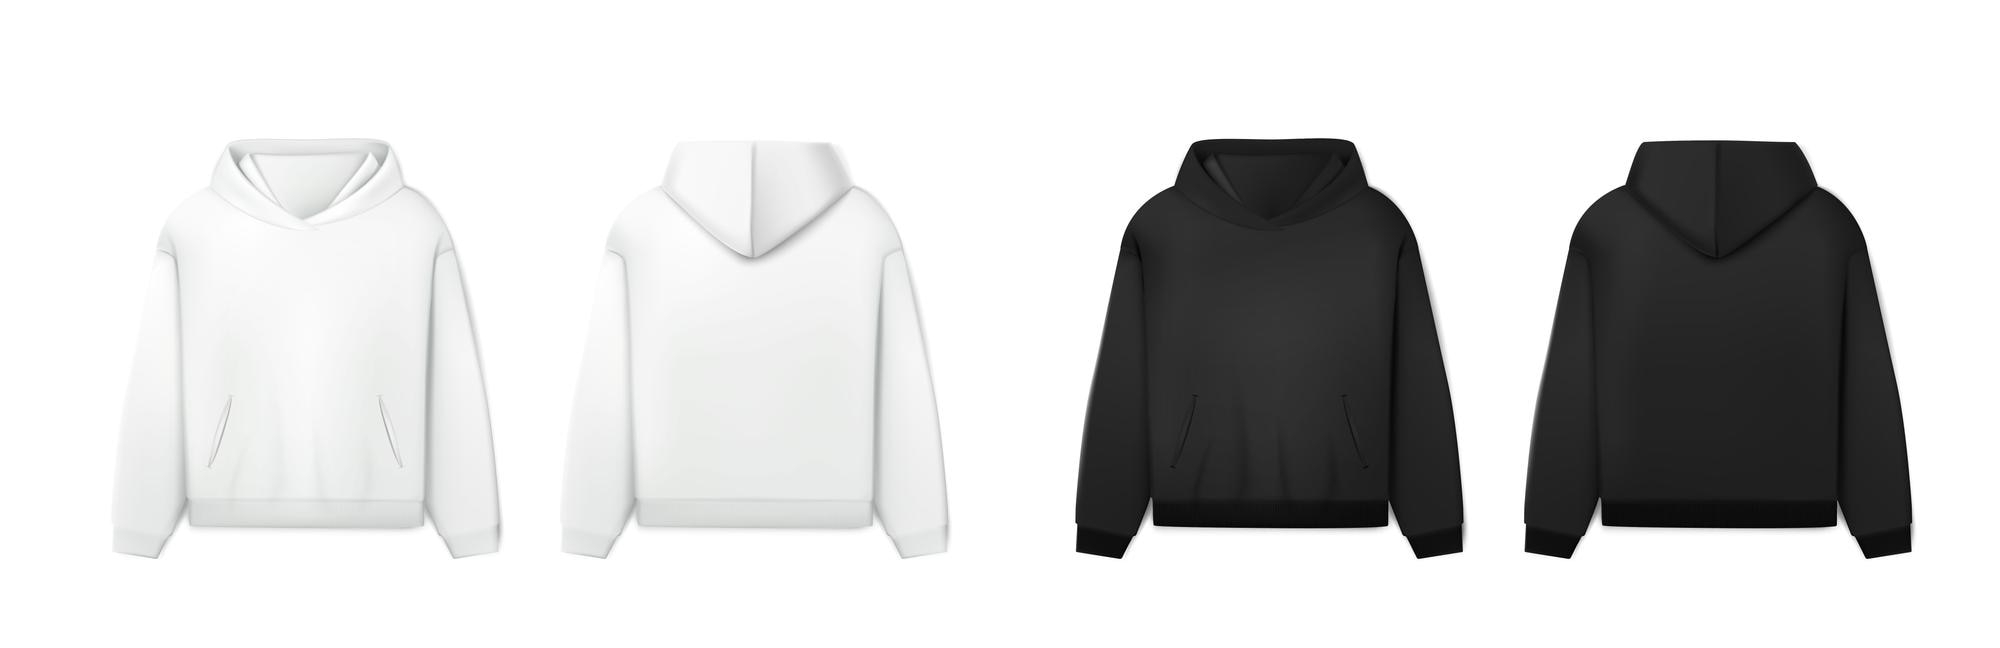 Black hoodie mockup Vectors & Illustrations for Free Download  Regarding Blank Black Hoodie Template